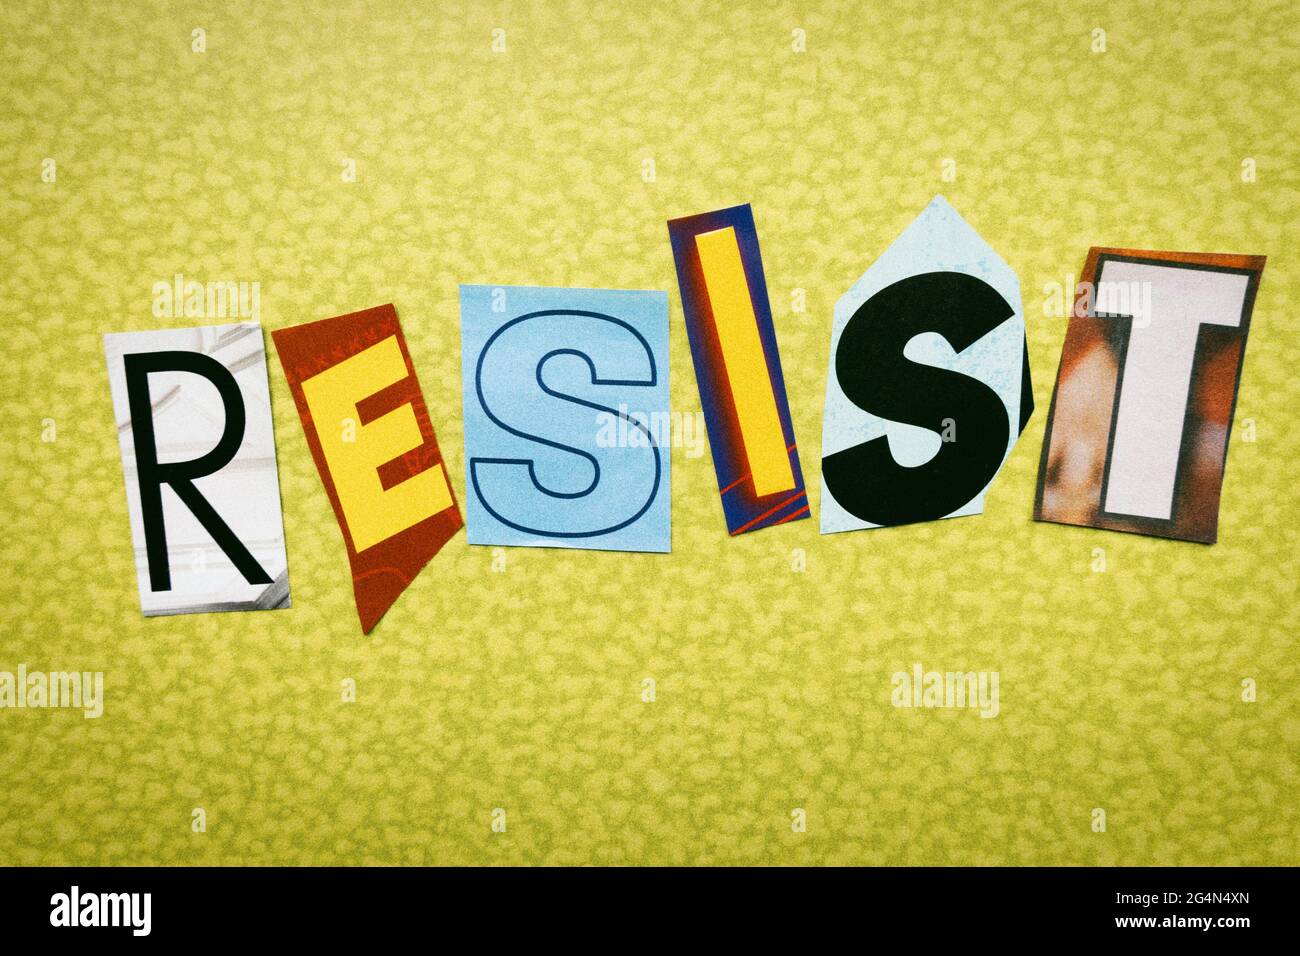 Le mot « Resist » utilisant des lettres en papier découpées dans la note de rançon a un effet typographique Banque D'Images